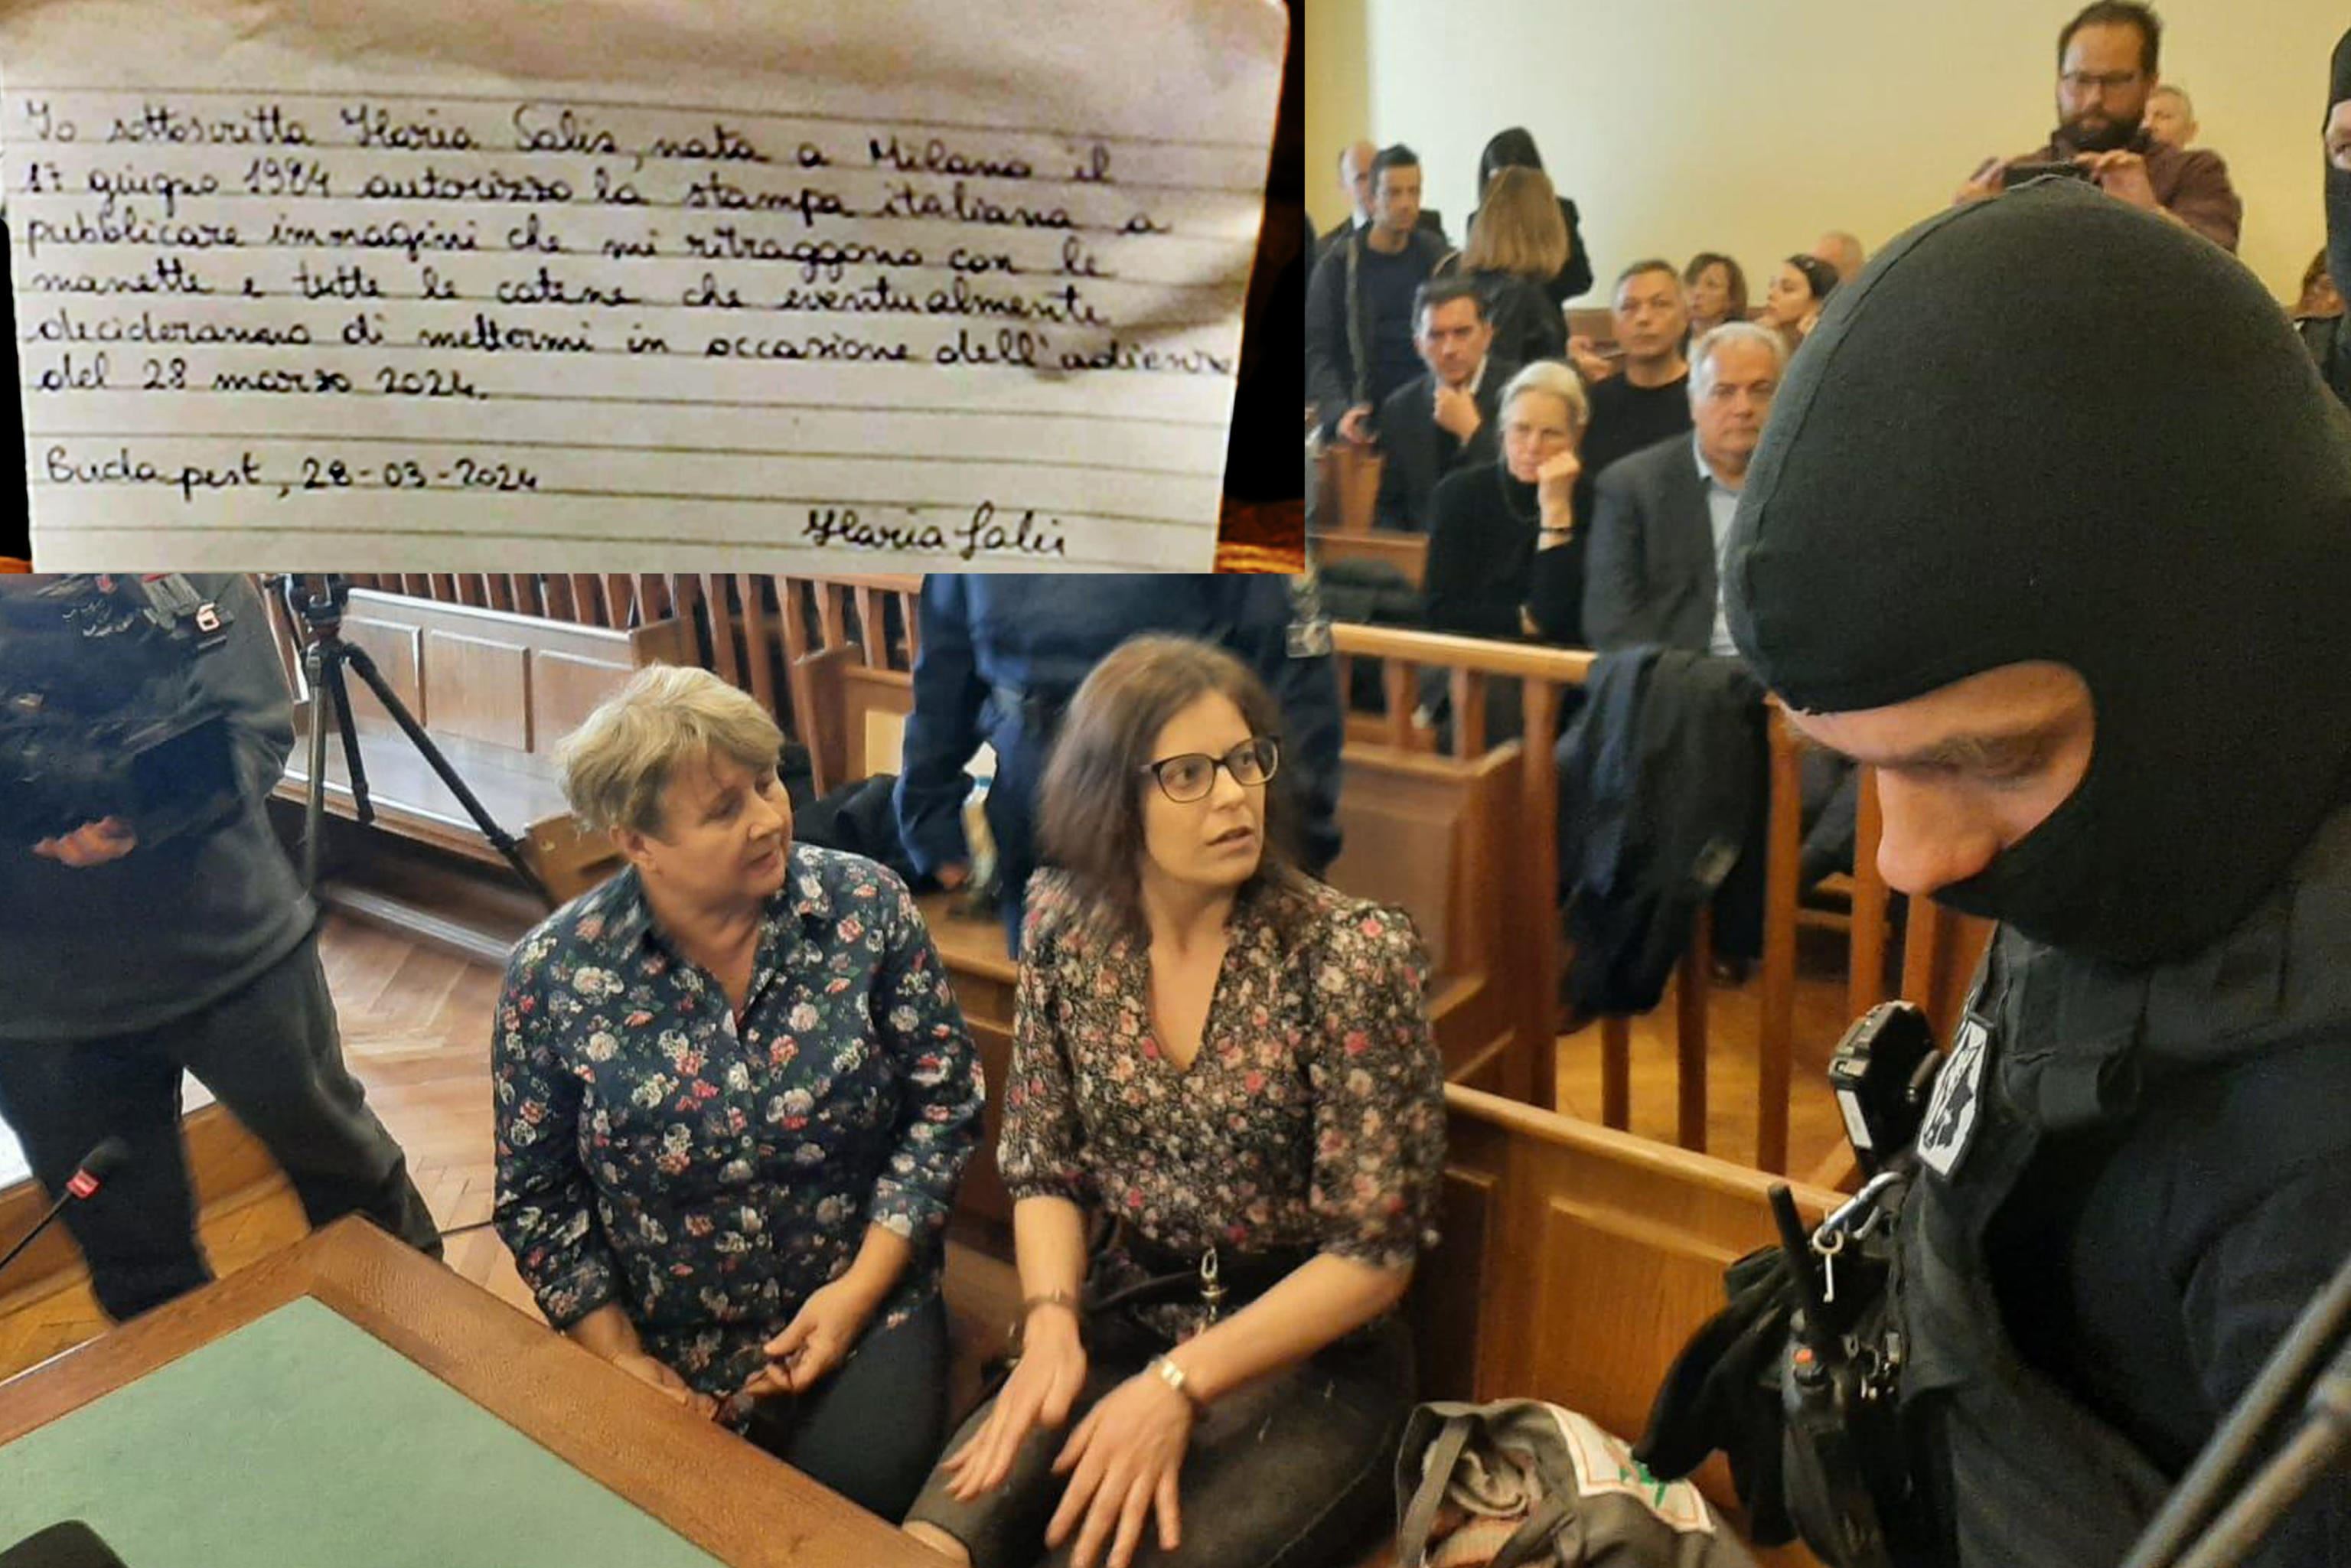 La foto con la lettera di Ilaria Salis con l'autorizzazione a diffondere le proprie immagini in catene durante il processo a Budapest